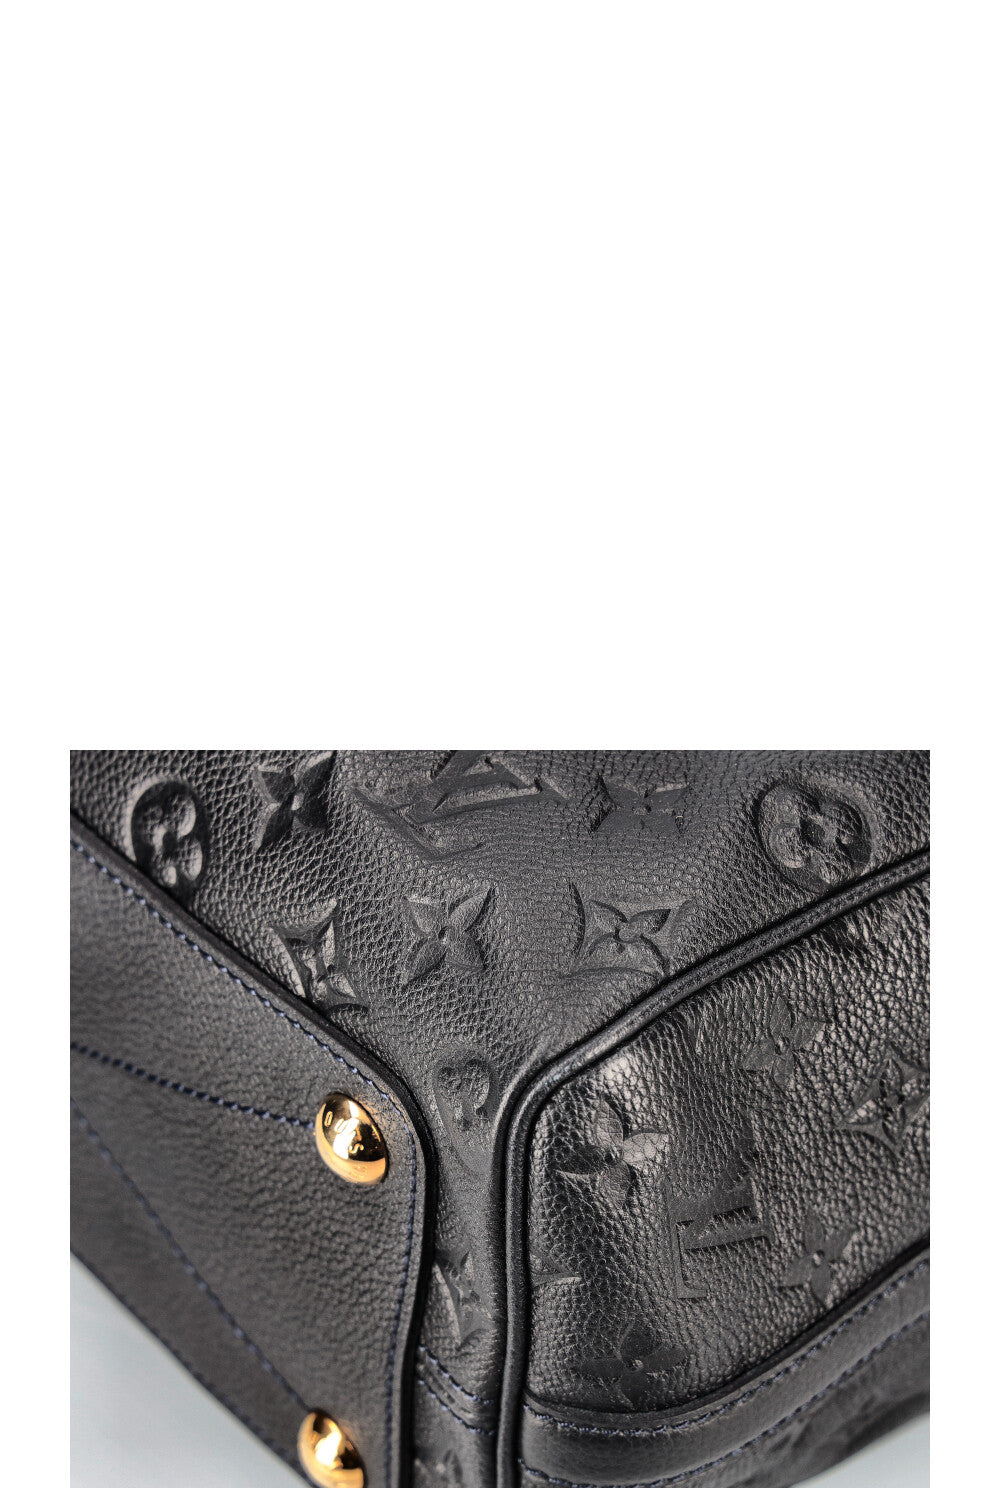 Louis Vuitton - Speedy 25 mit Schulterriemen - Monogram Empreinte